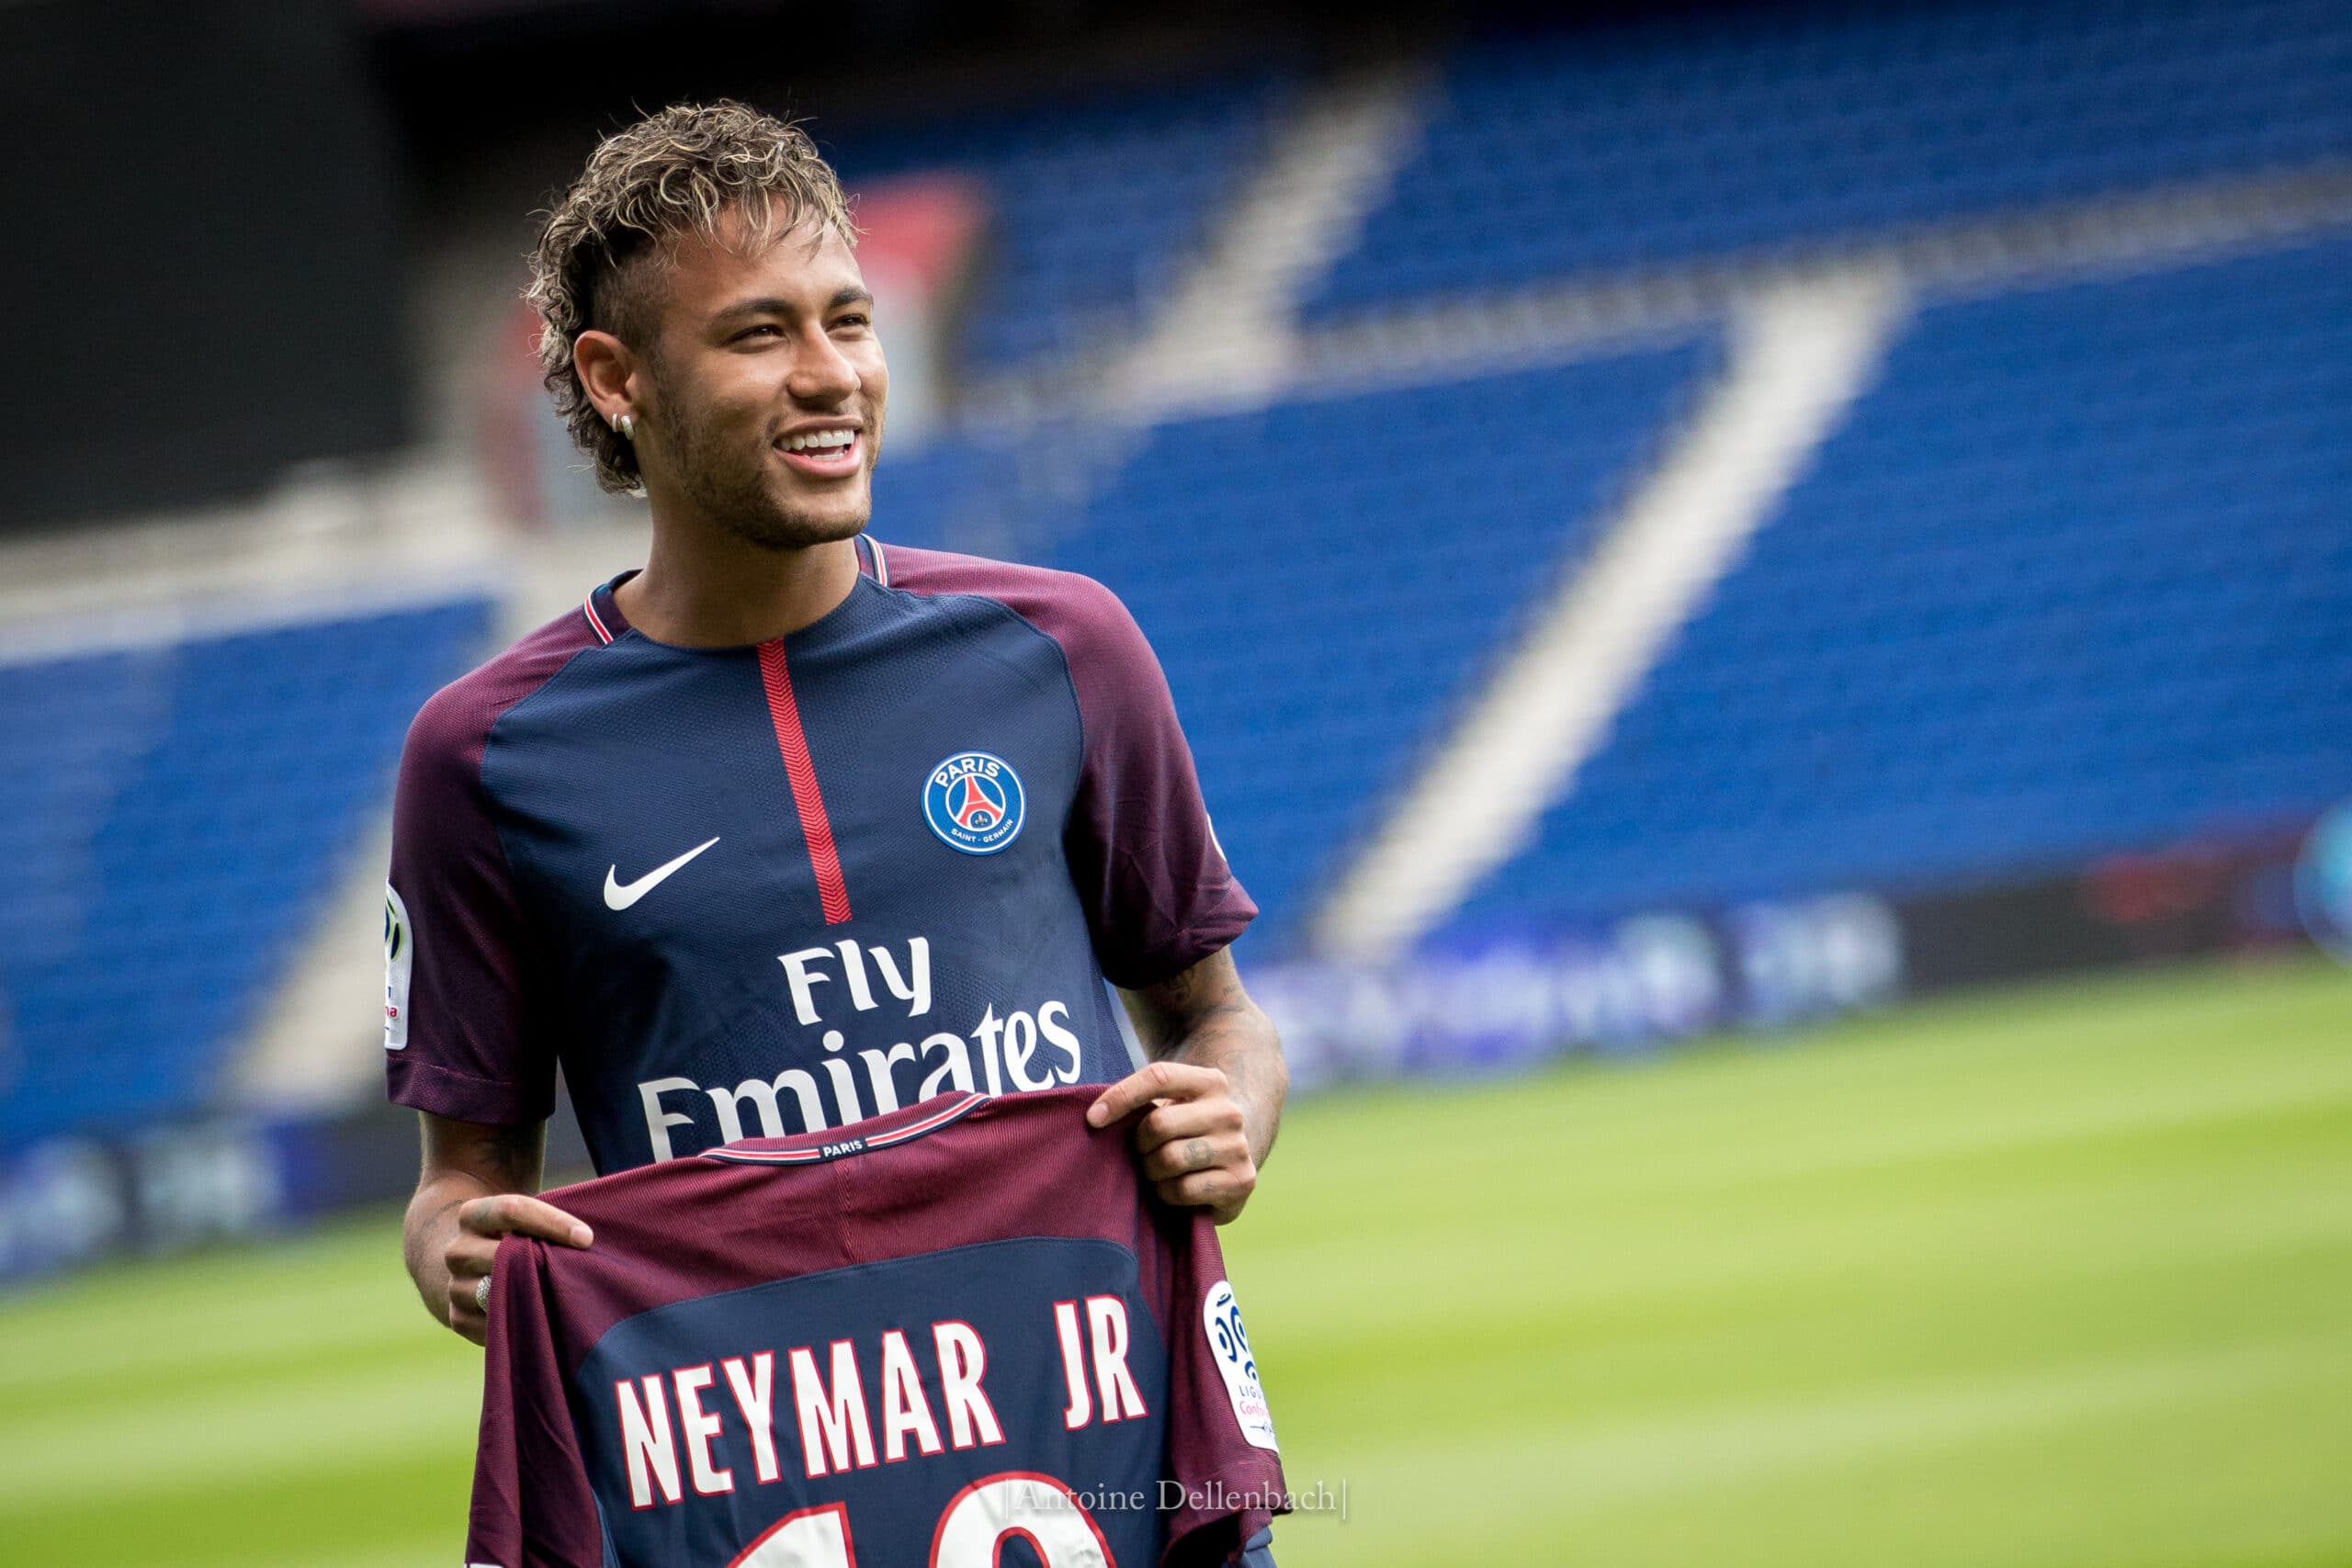 Fußballer Neymar